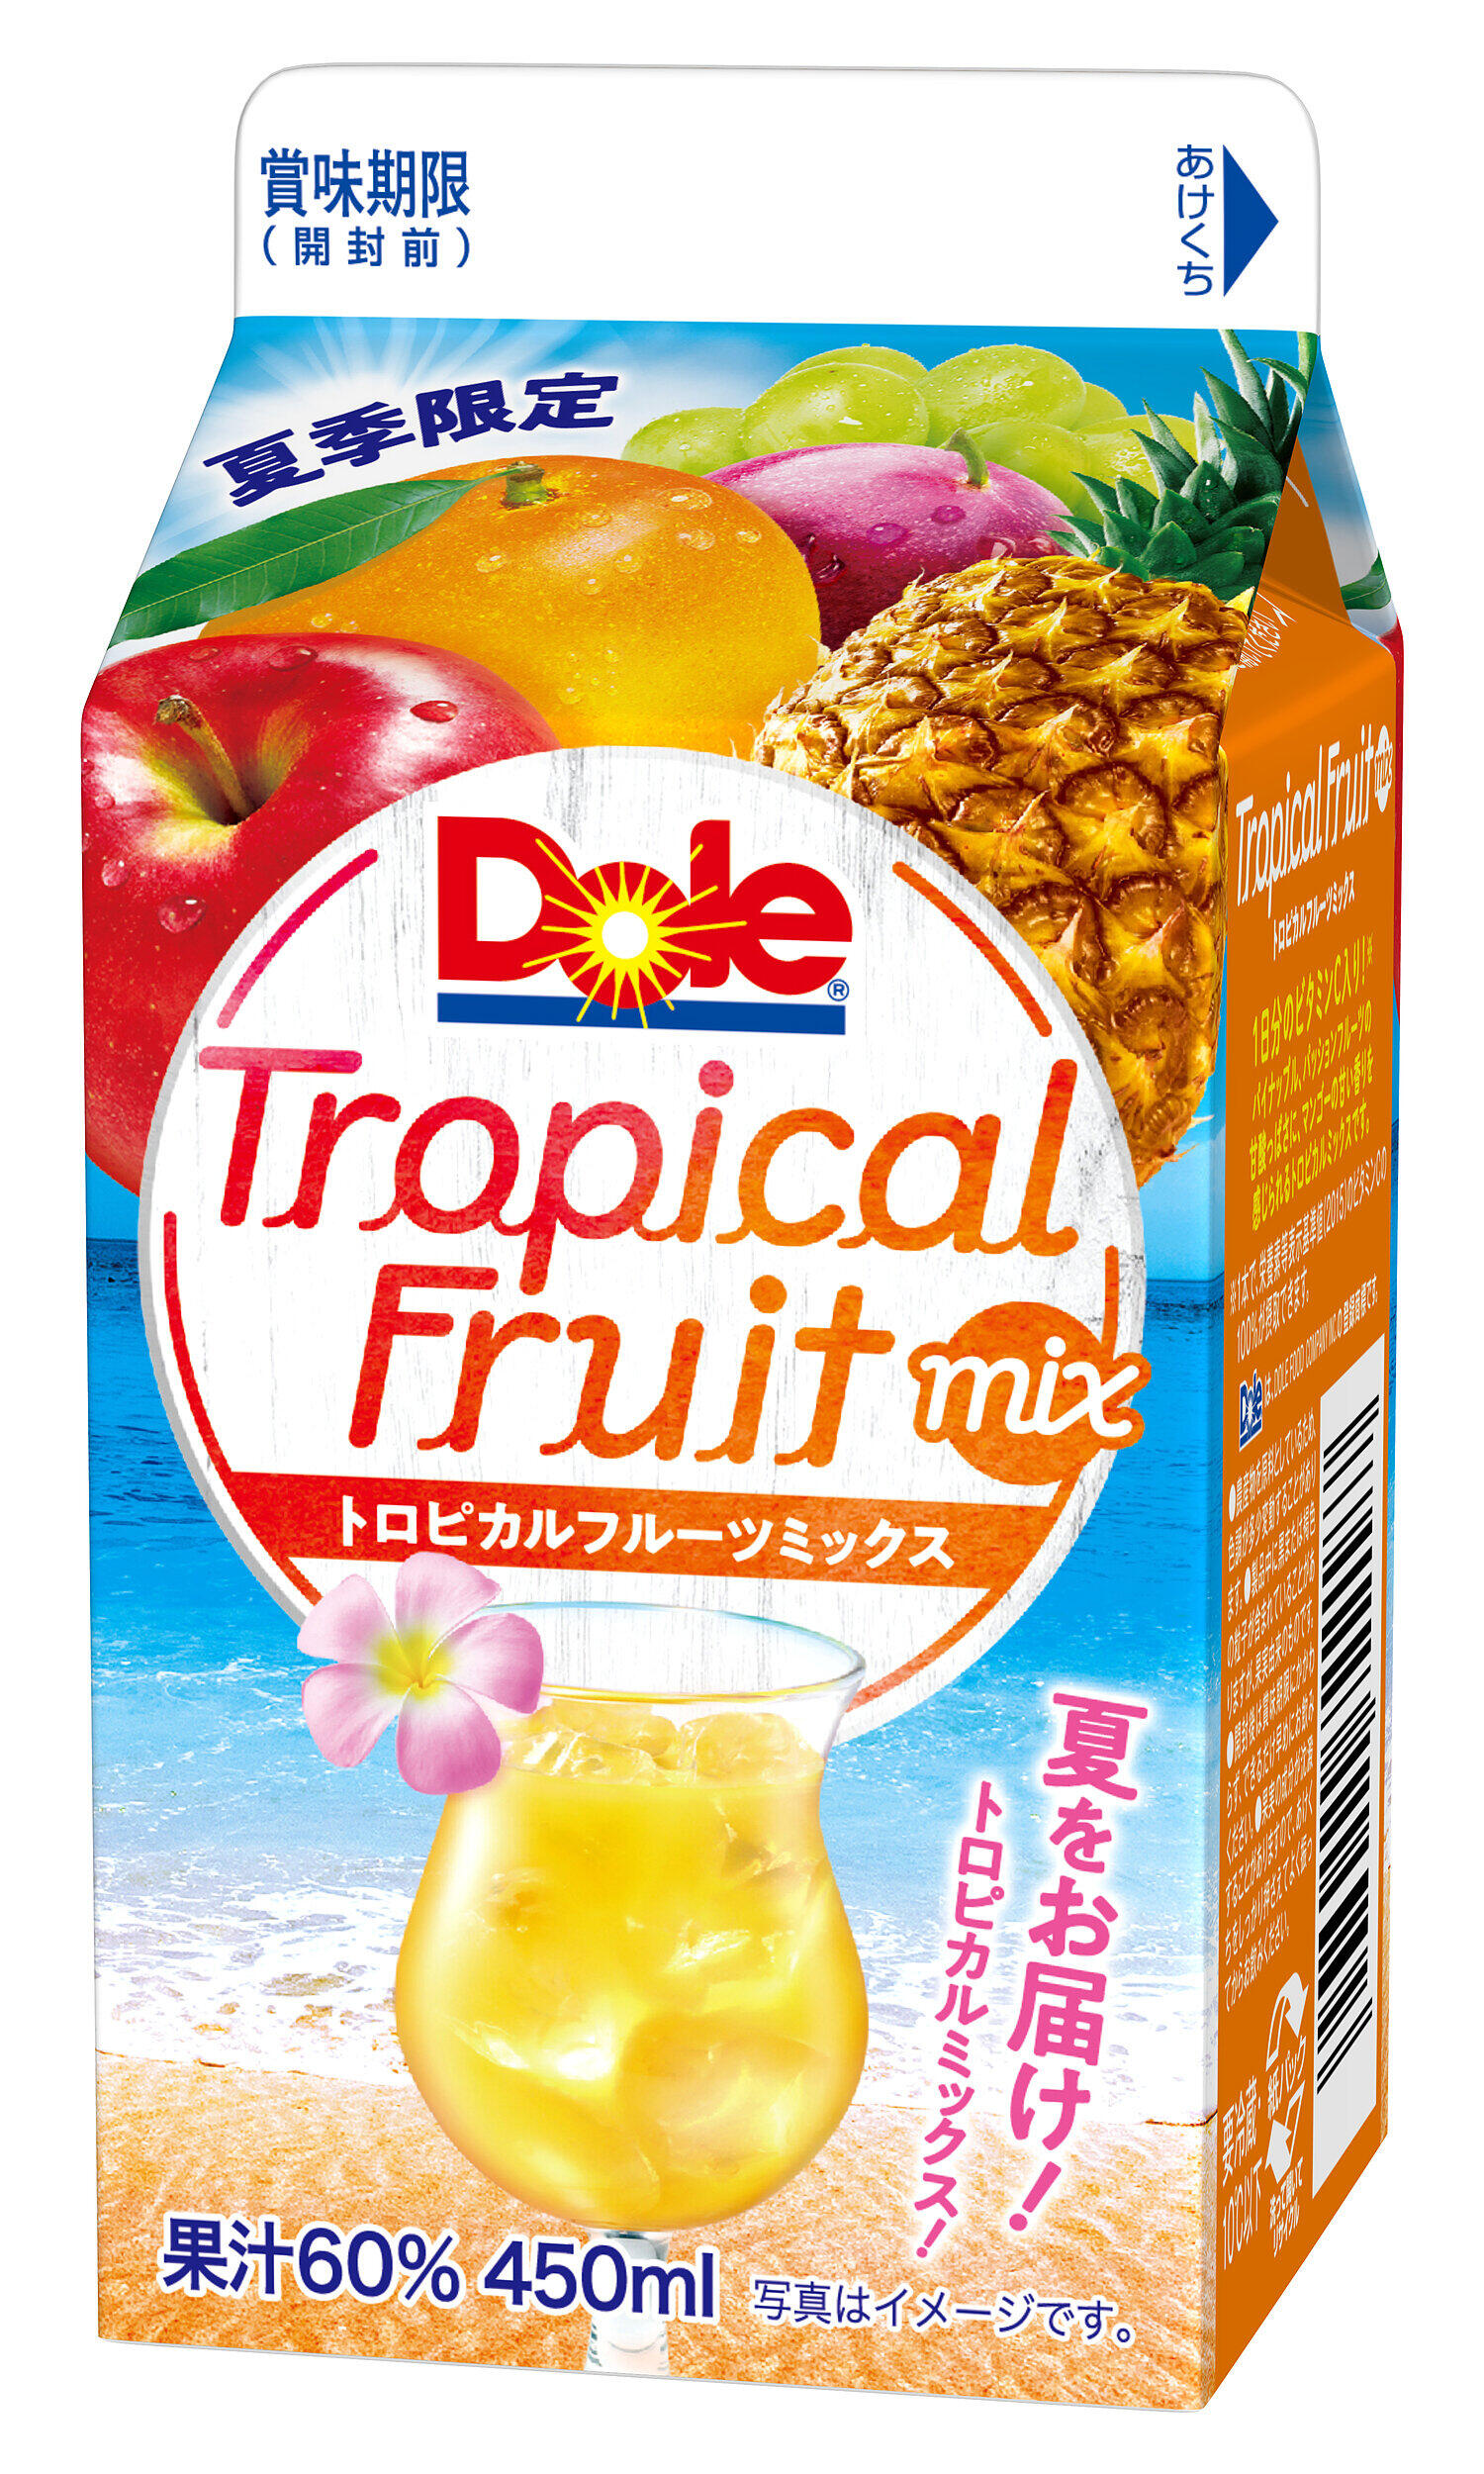 マンゴーにパイナップル フルーツ5種の トロピカルフルーツミックス J Cast トレンド